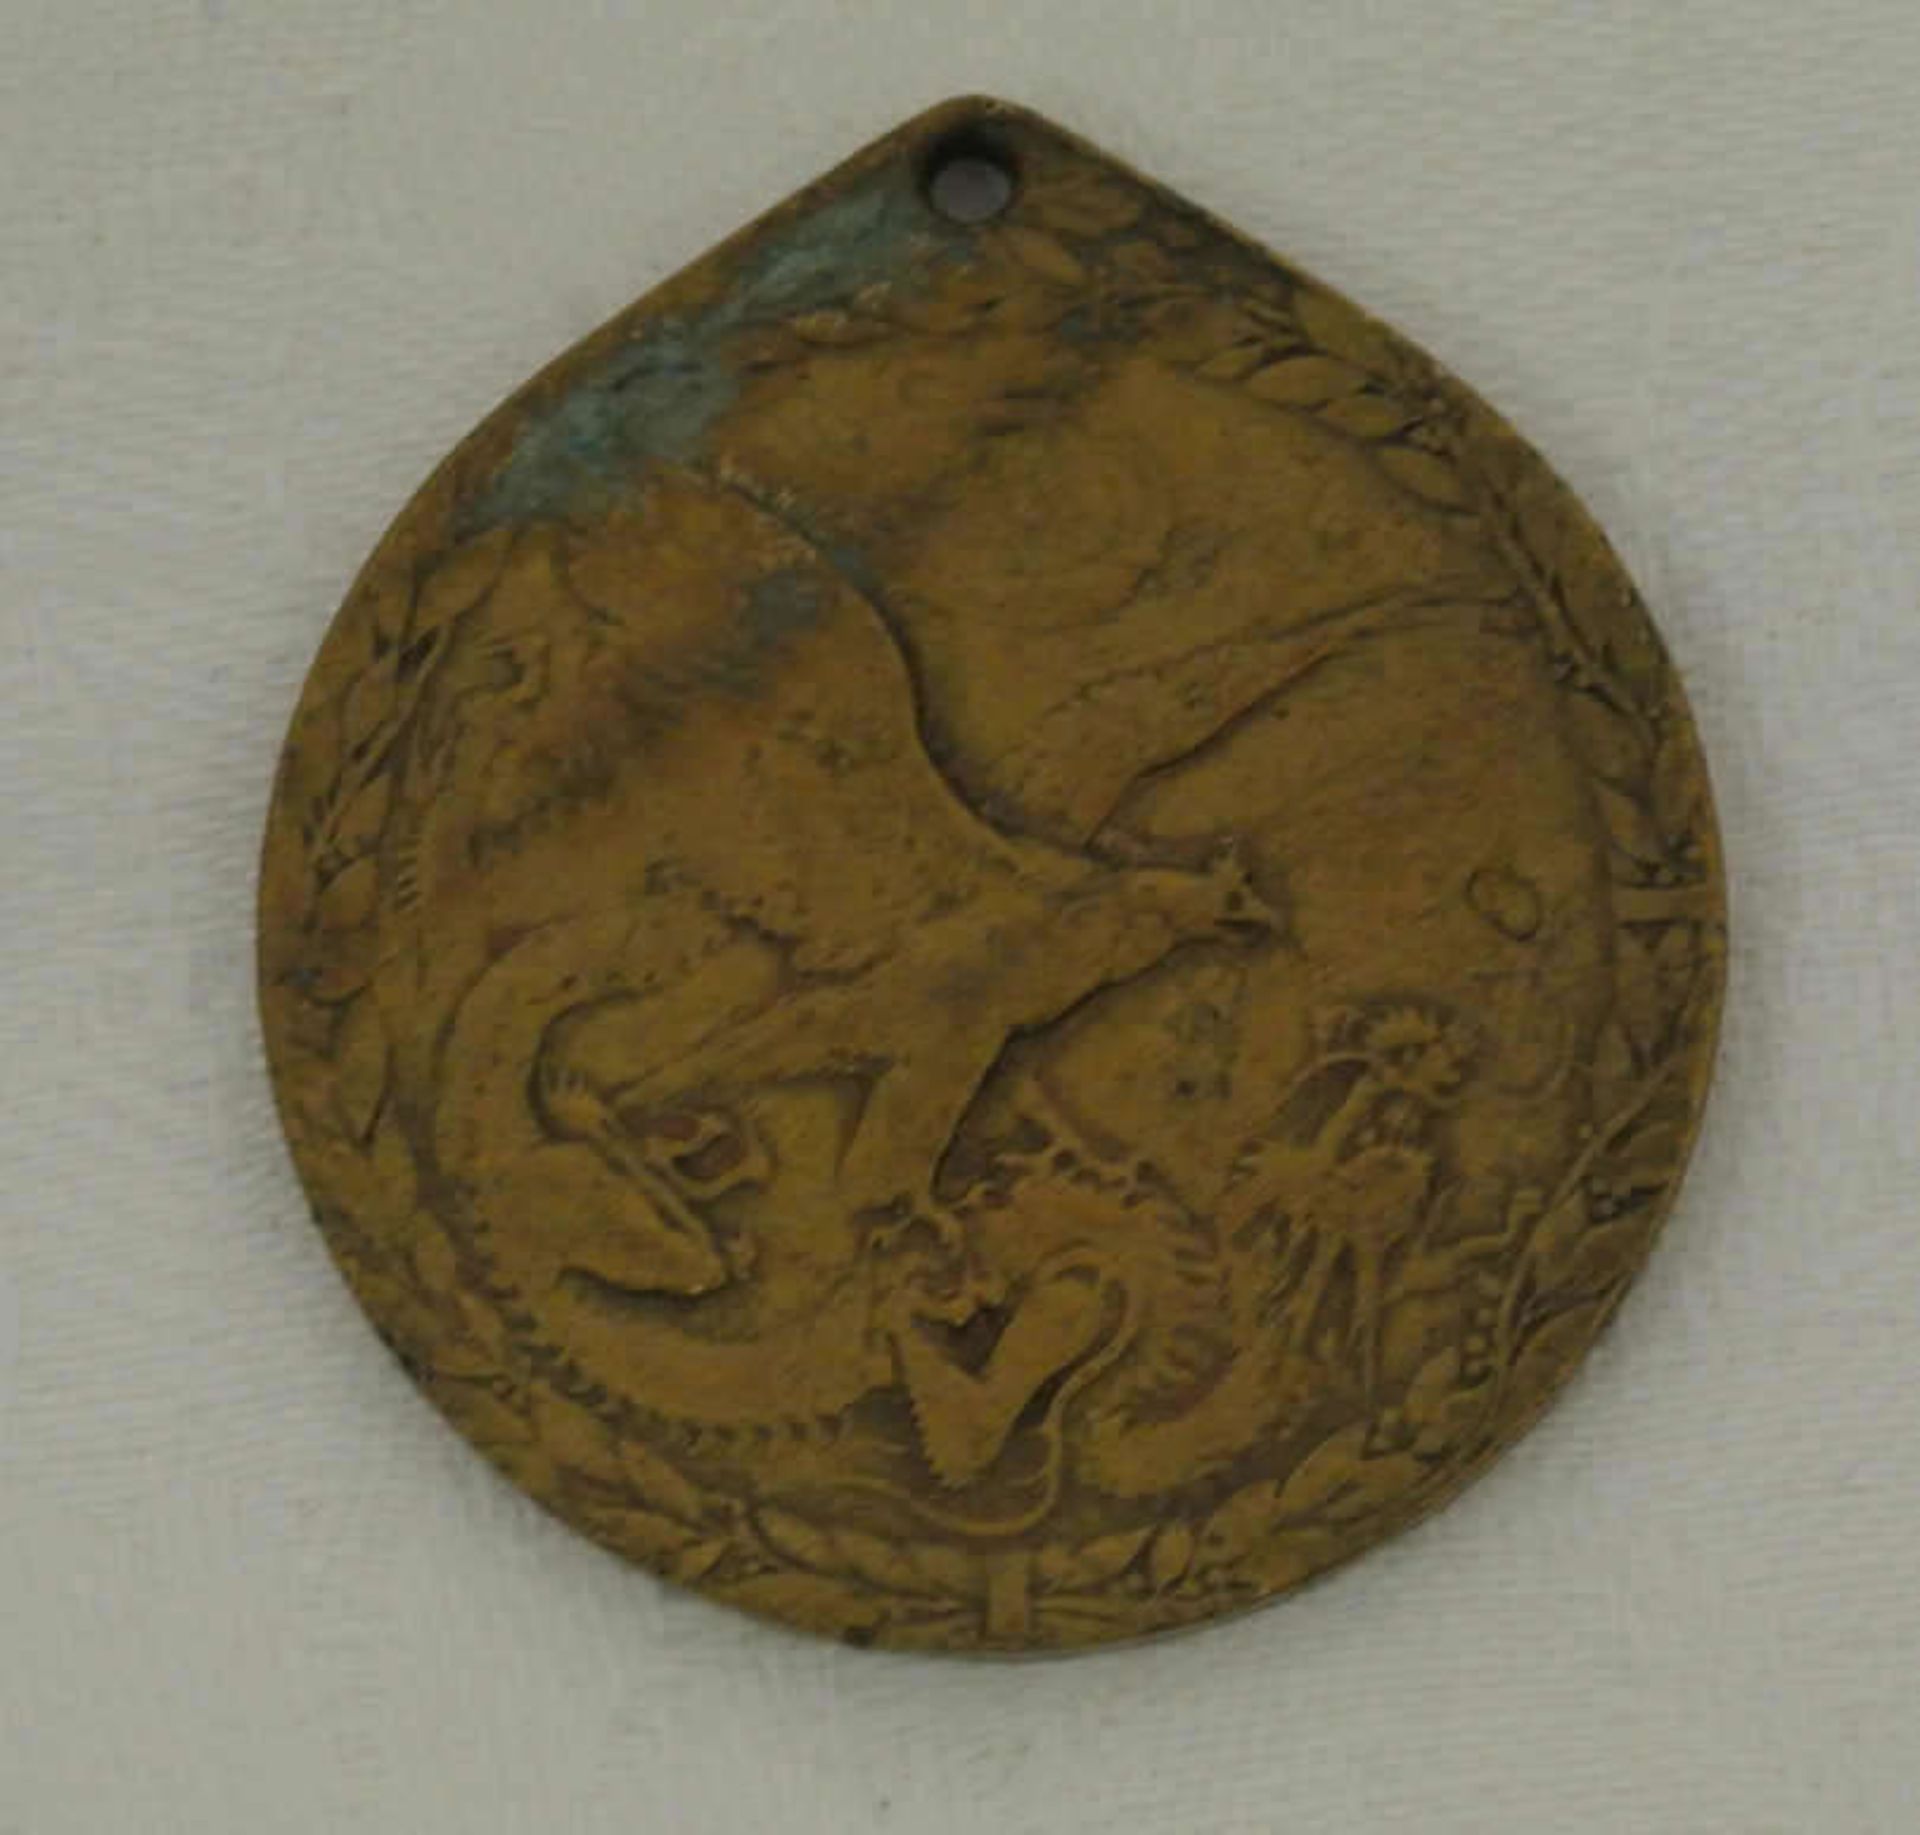 Orden Kaisserreich, Deutsche Kolonie China, China Gedenkmünze für Kämpfer 1901. Bronze vergoldet